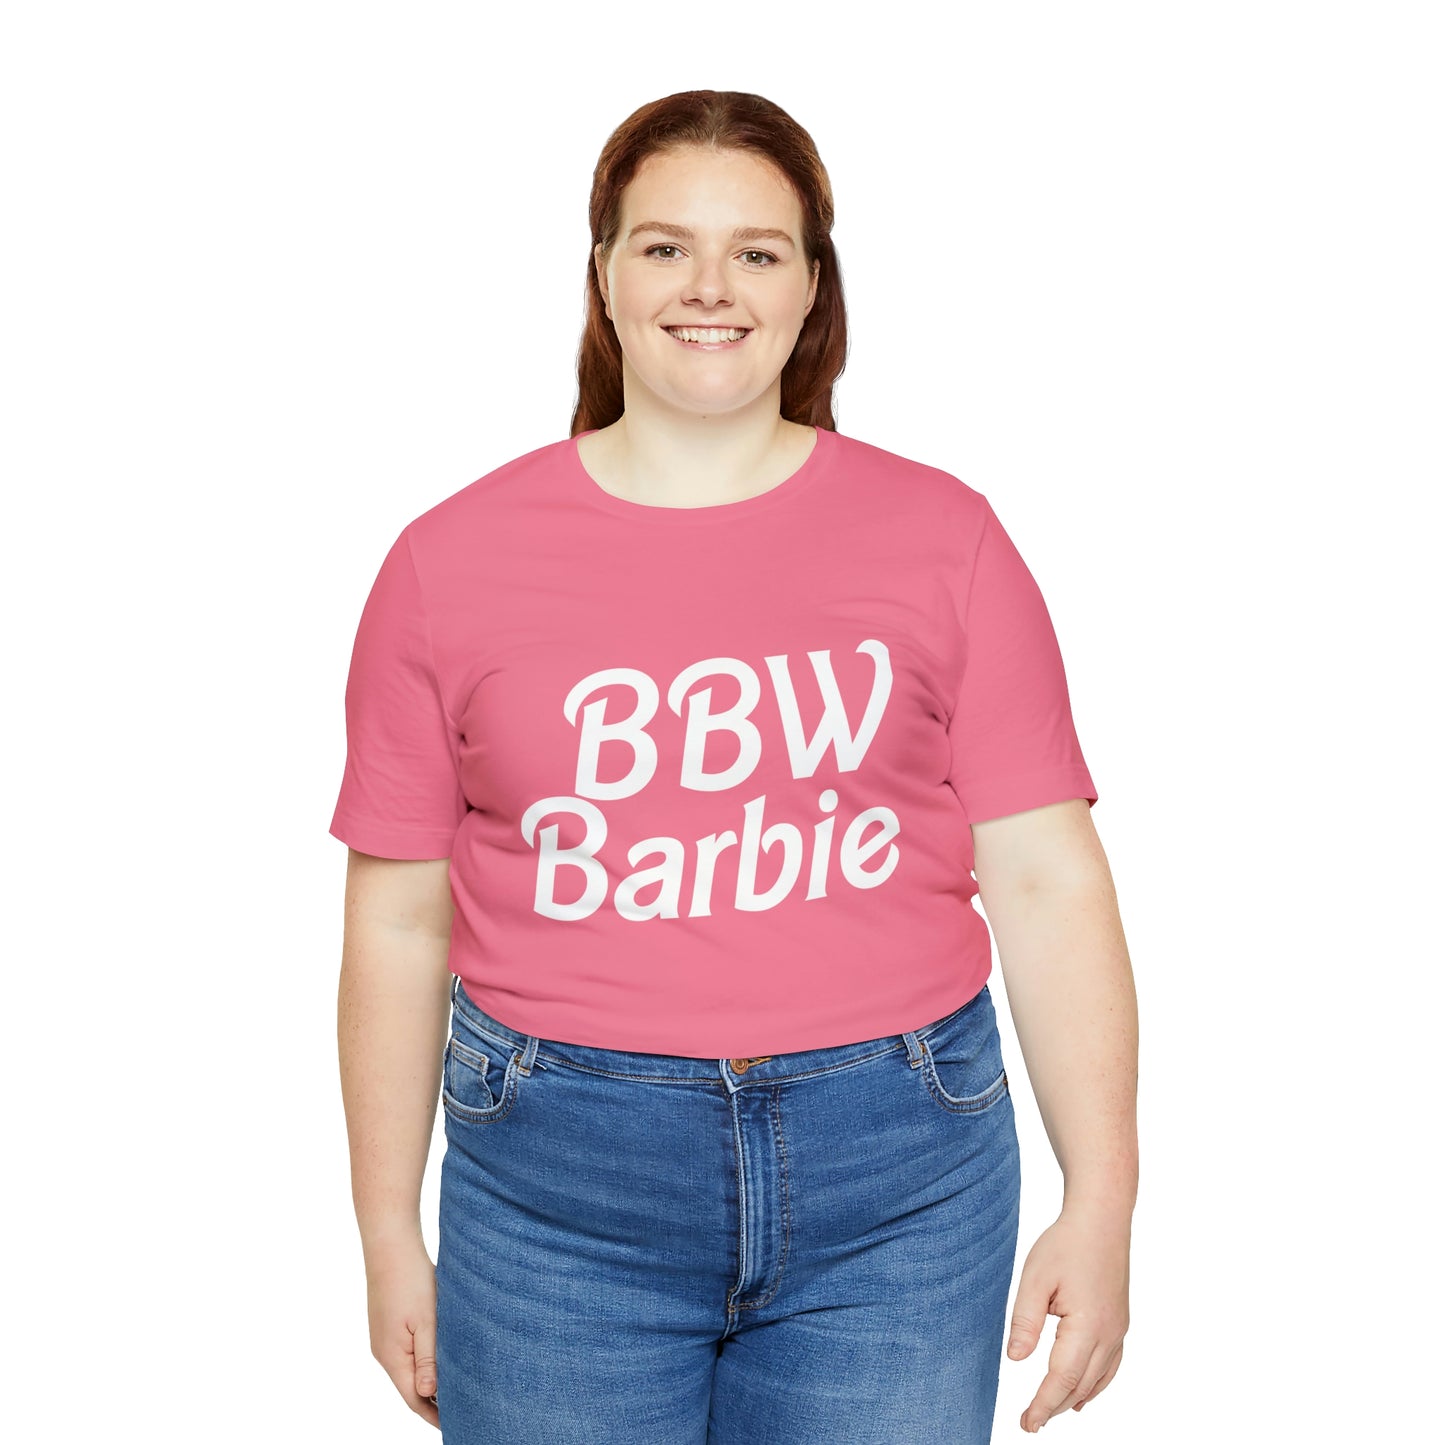 BBW Barbie